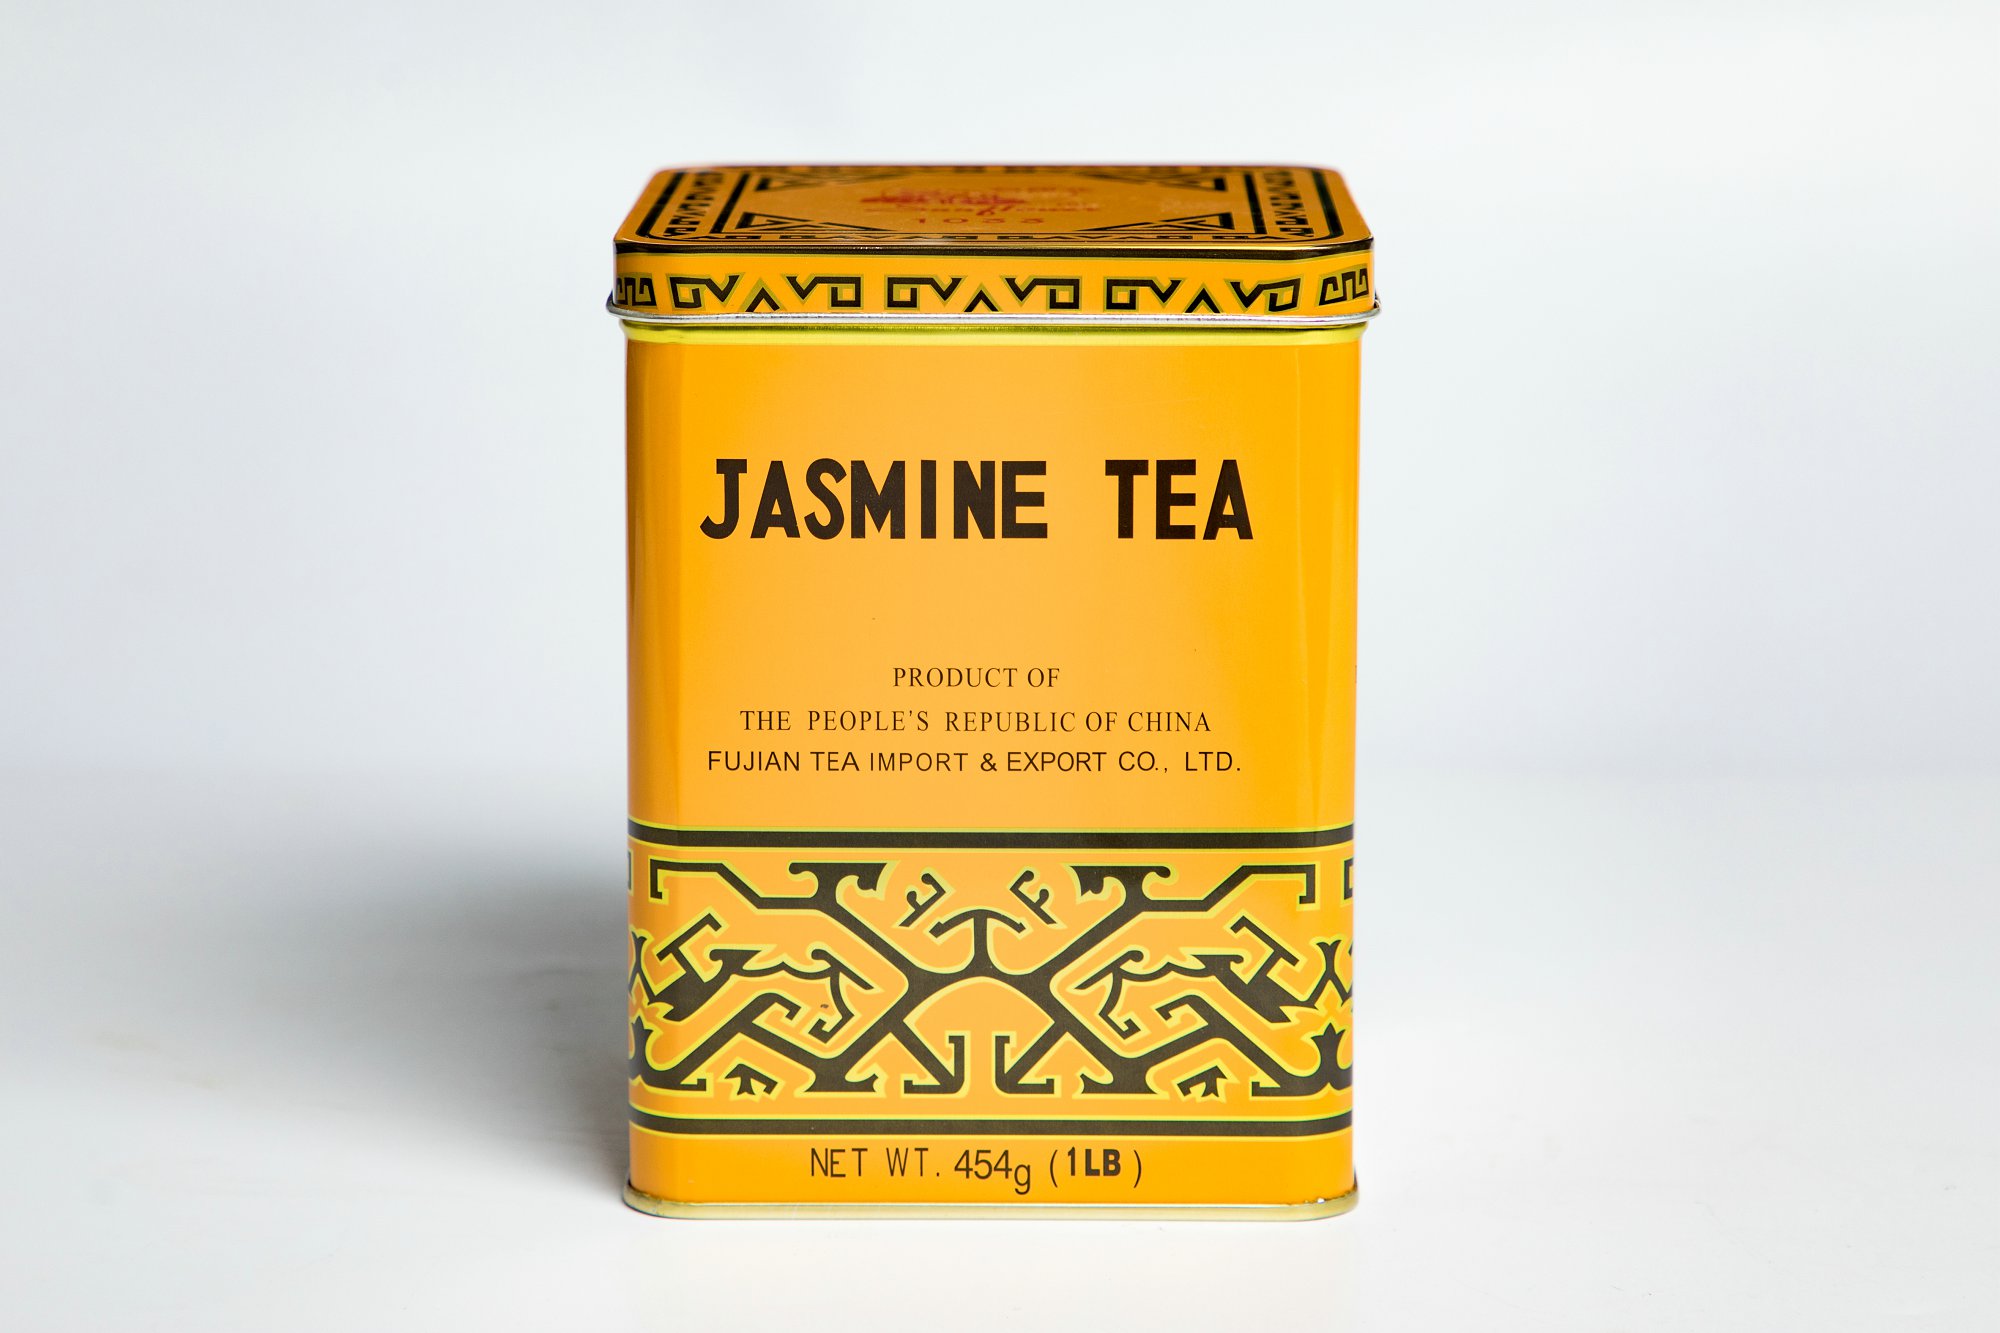 Jasmine leaf tea #1033 1-lb